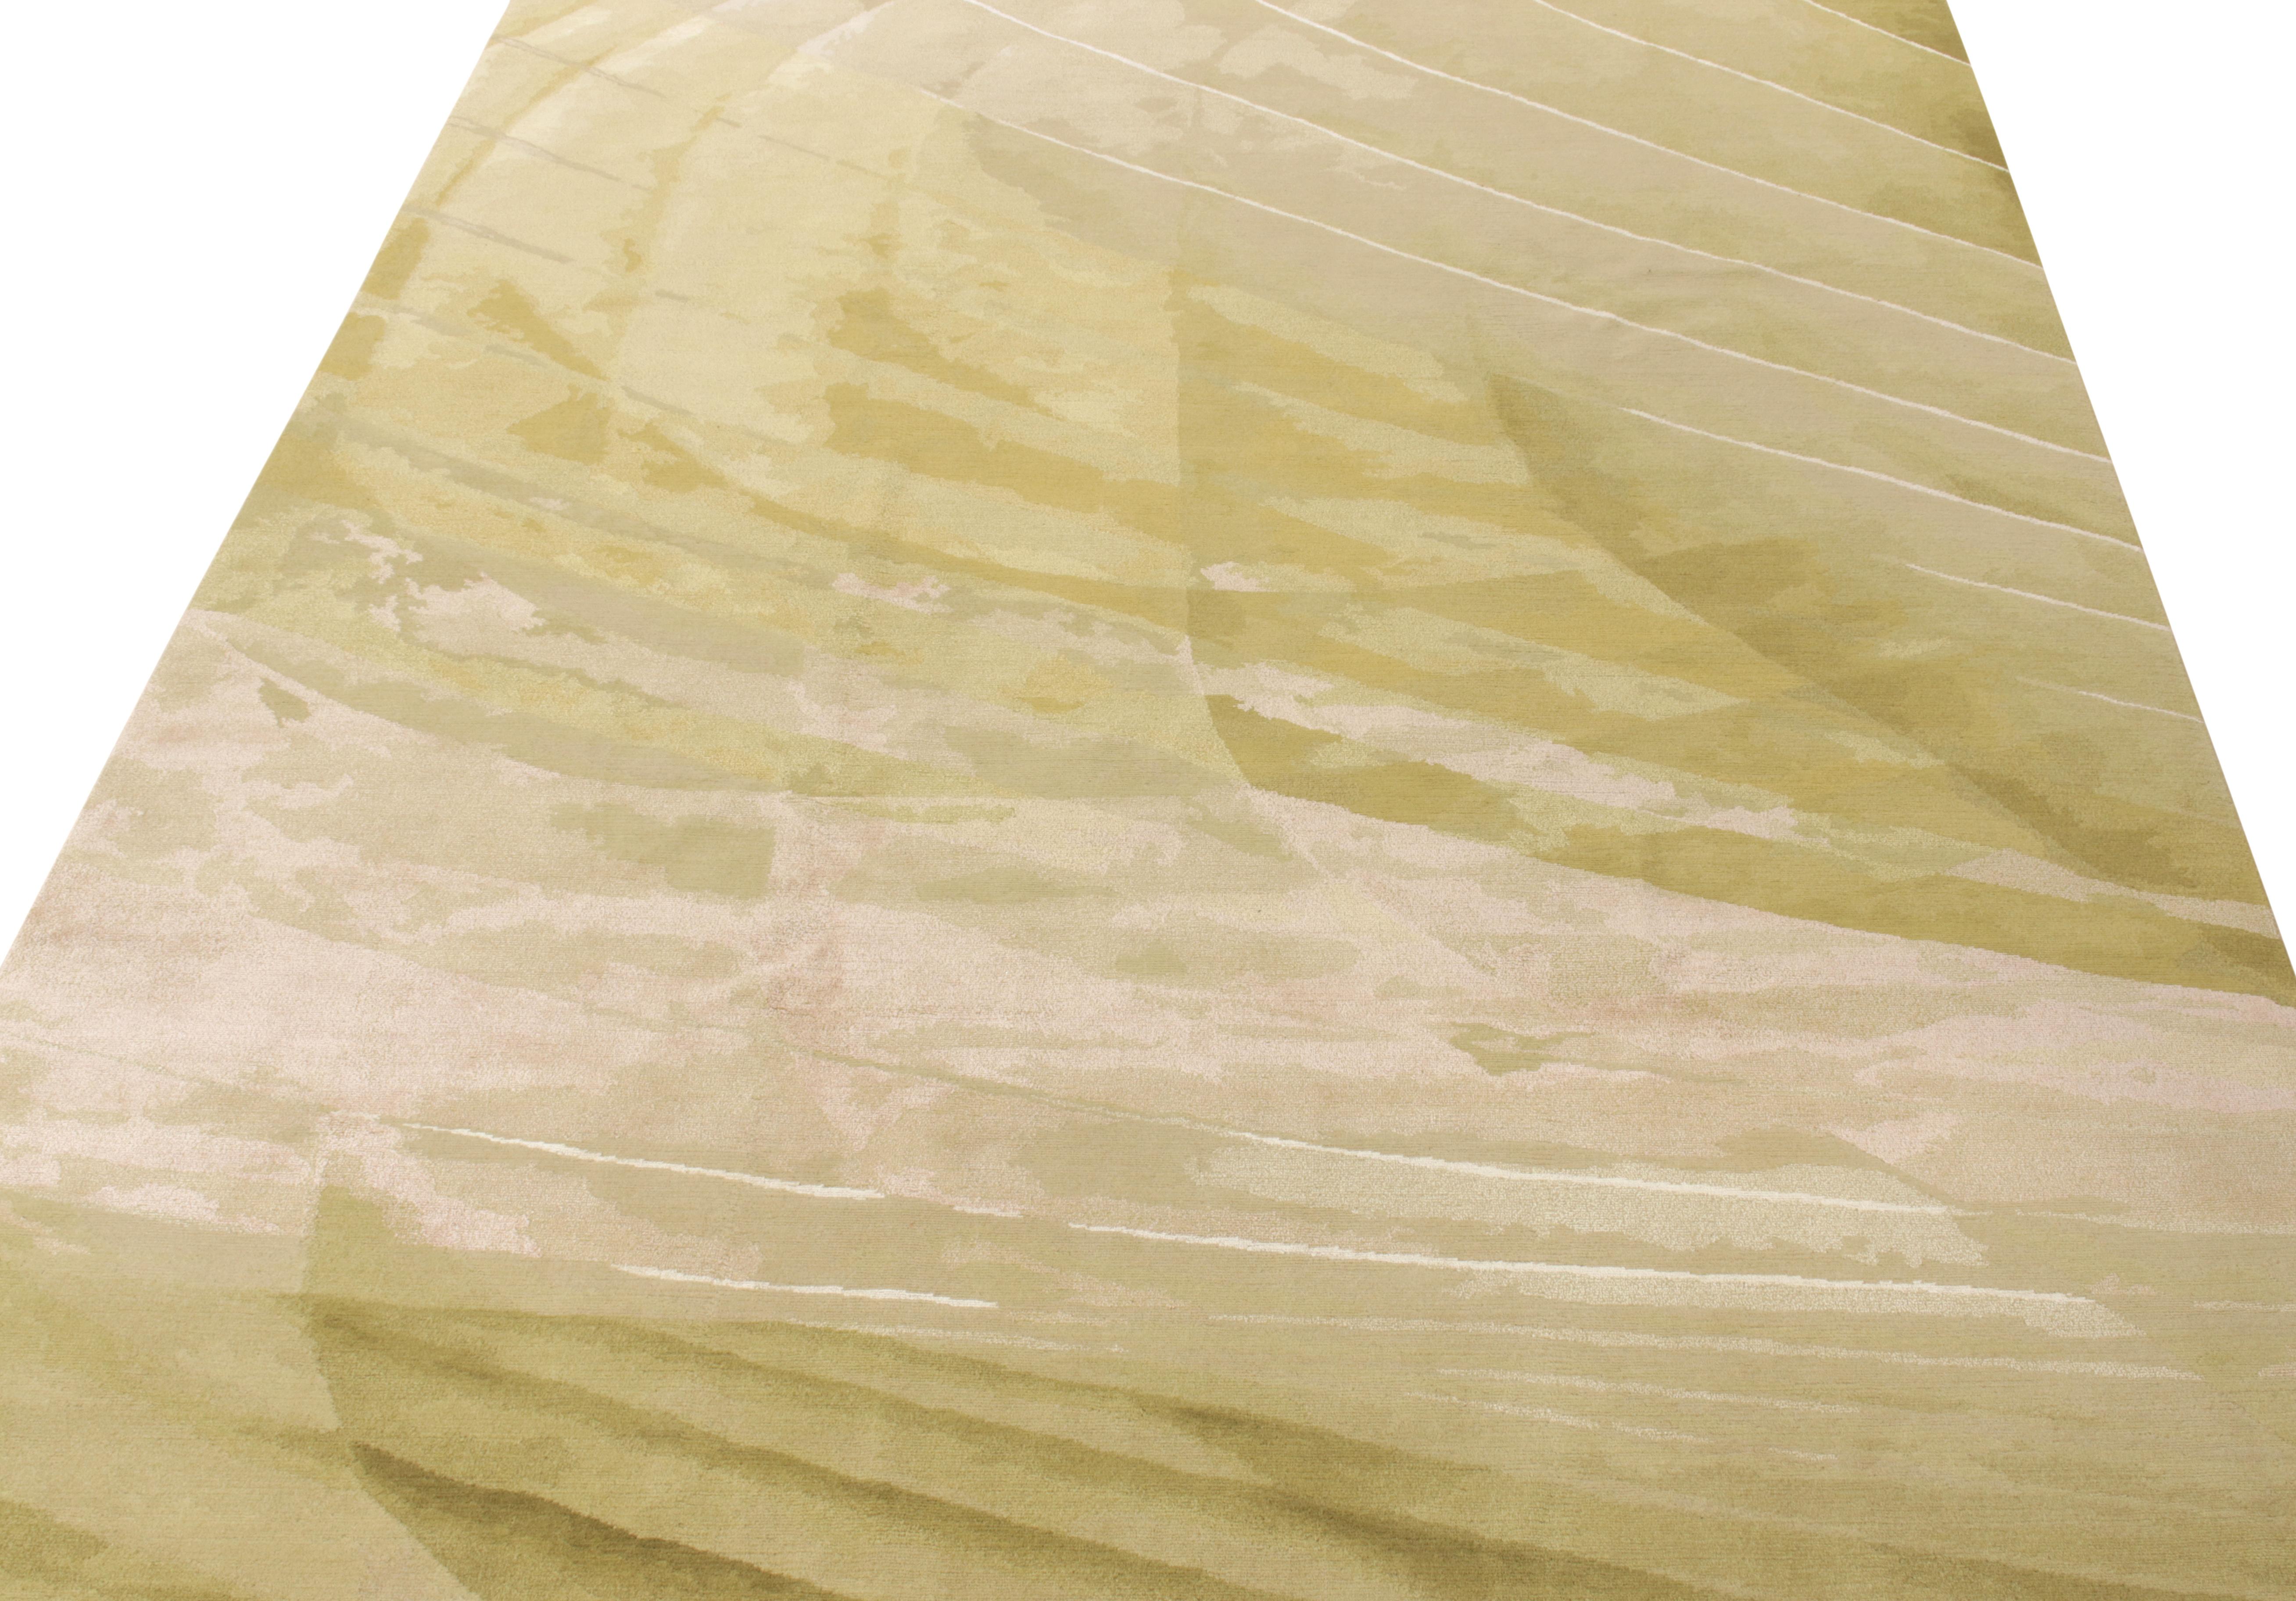 Ein 8x10 moderner Teppich aus den abstrakten Stilen der New & Modern Collection von Rug & Kilim. Diese aus Wolle und glänzender Seide handgeknüpfte Hommage in Pinselstrichen erfreut sich an Olivgrün und Rosa mit subtilen Goldtönen, die den